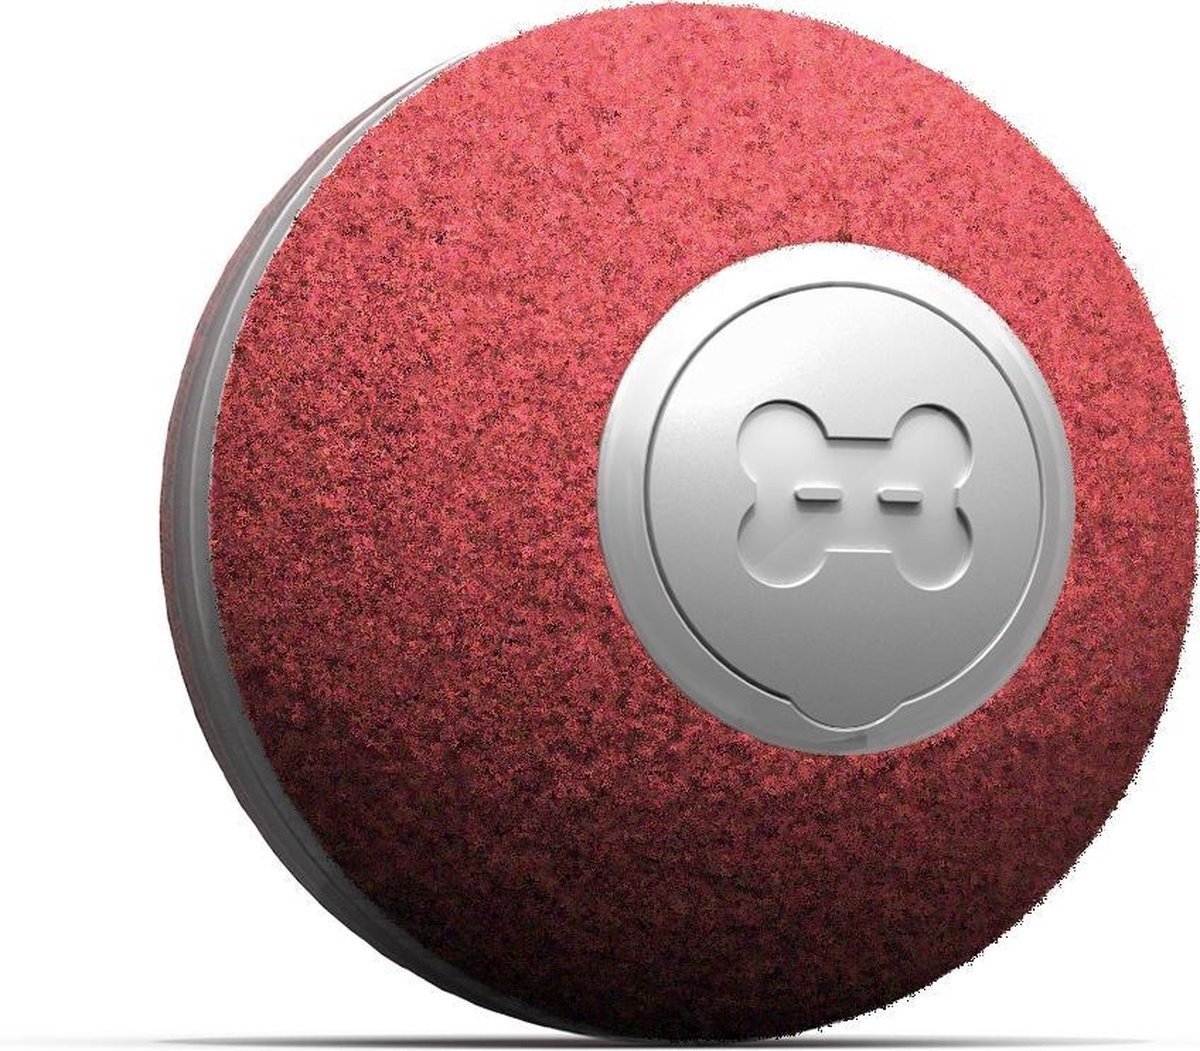 auf USB günstig Kaufen-Cheerble mini ball 2.0 - Intelligenter interaktiver selbstrollender Ball für Katzen - 3 Spielmodi - Katzenspielzeug - USB aufladbar - Rot. Cheerble mini ball 2.0 - Intelligenter interaktiver selbstrollender Ball für Katzen - 3 Spielmodi - Katzen